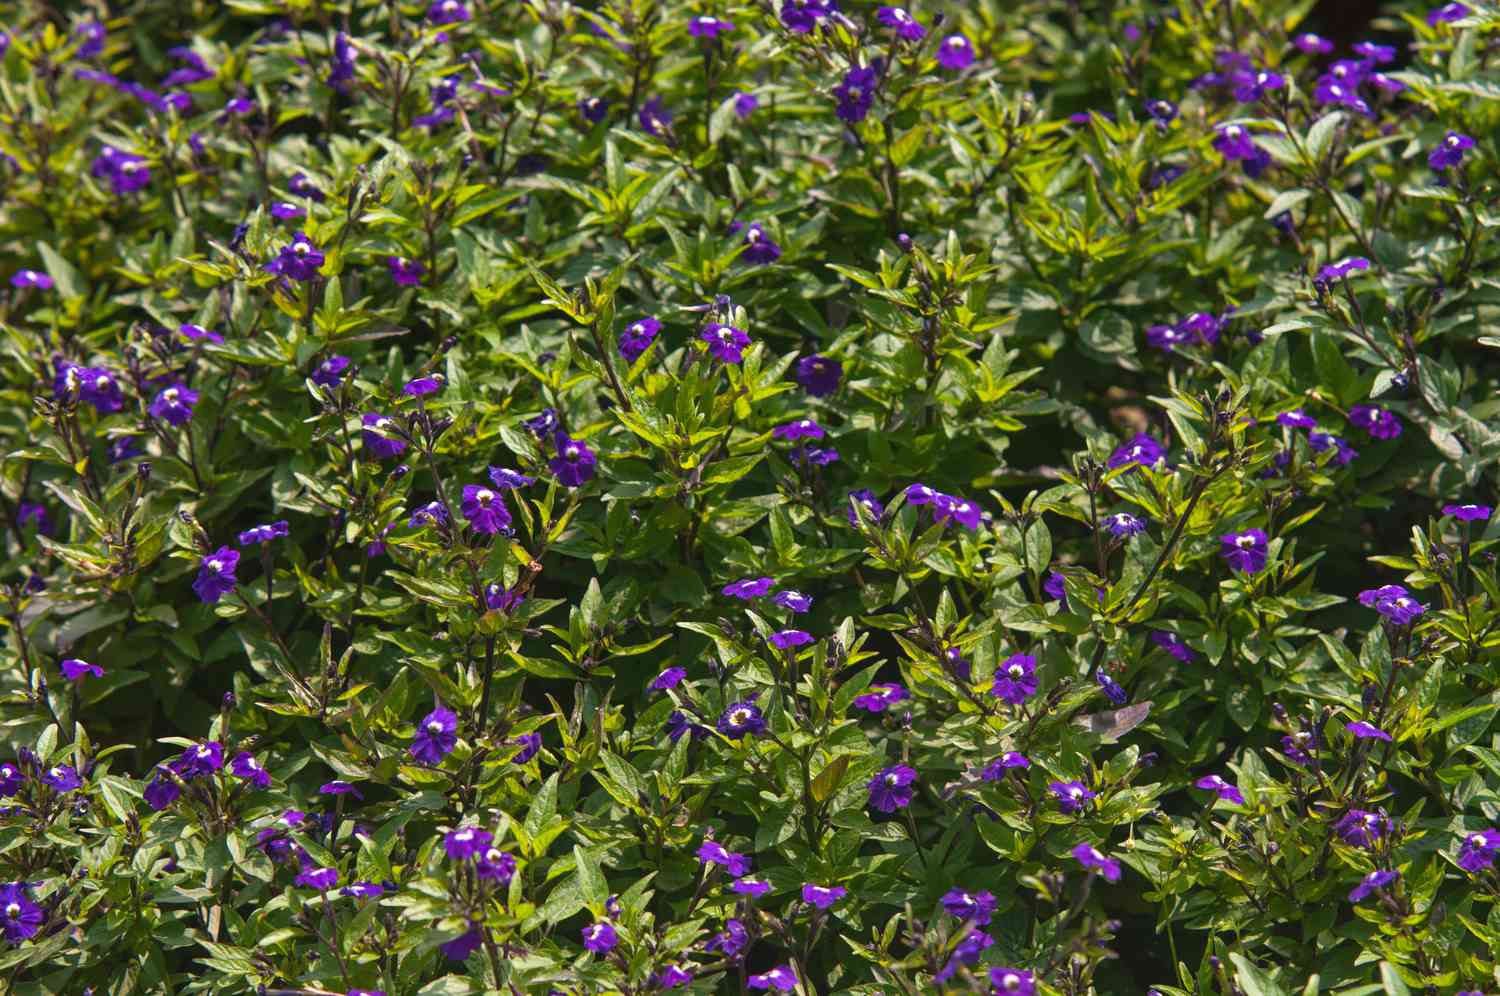 Browallia-Pflanze mit tiefvioletten Blüten auf hellgrünen Blattstielen im Sonnenlicht